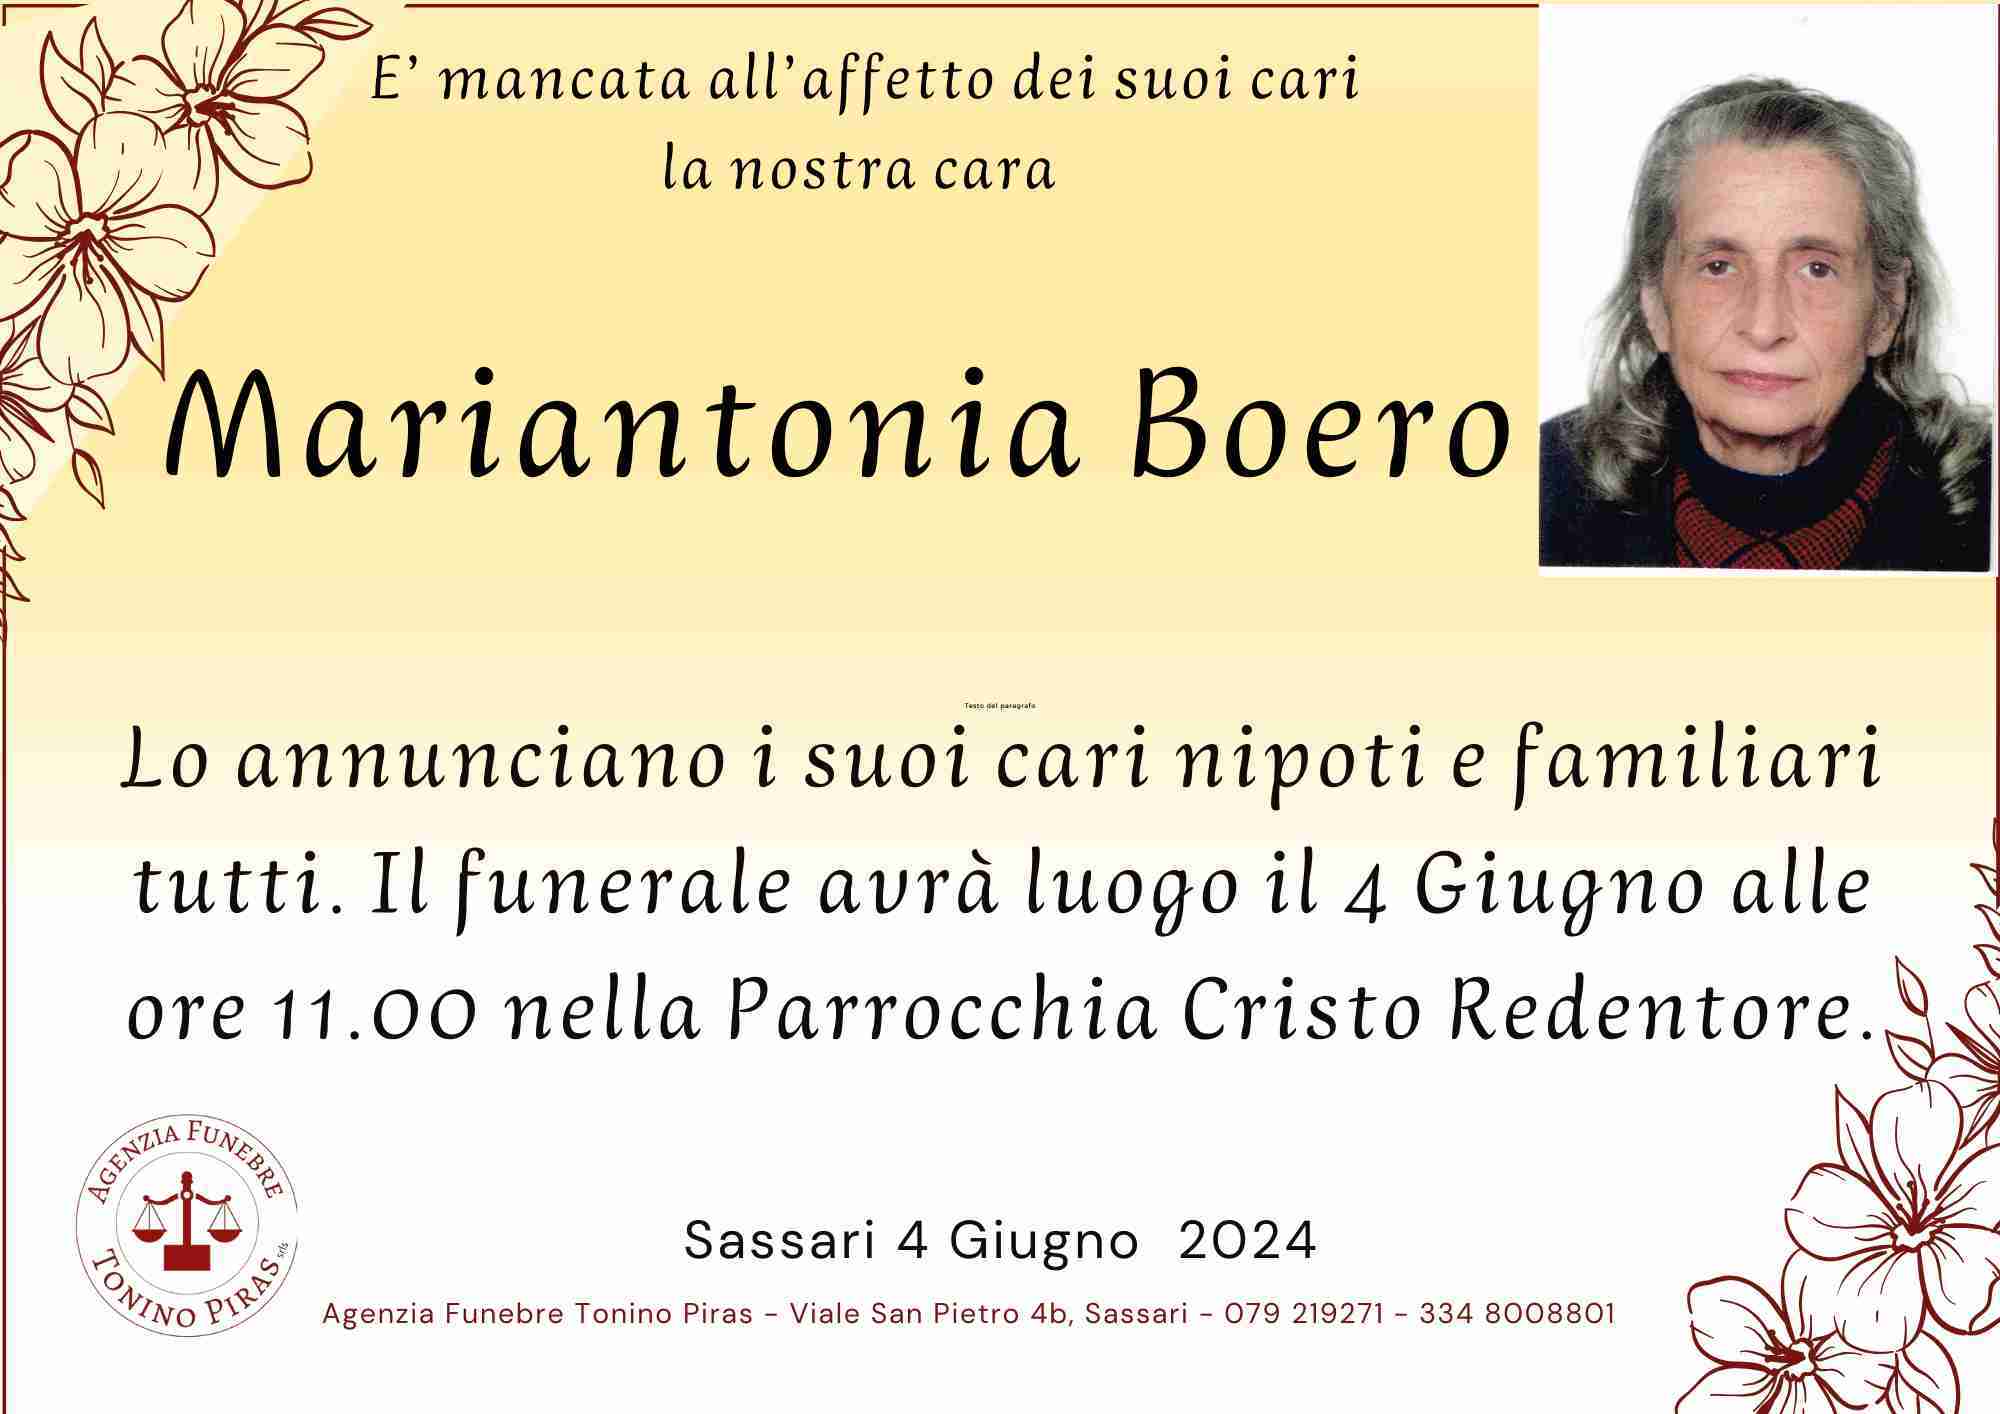 Mariantonia Boero